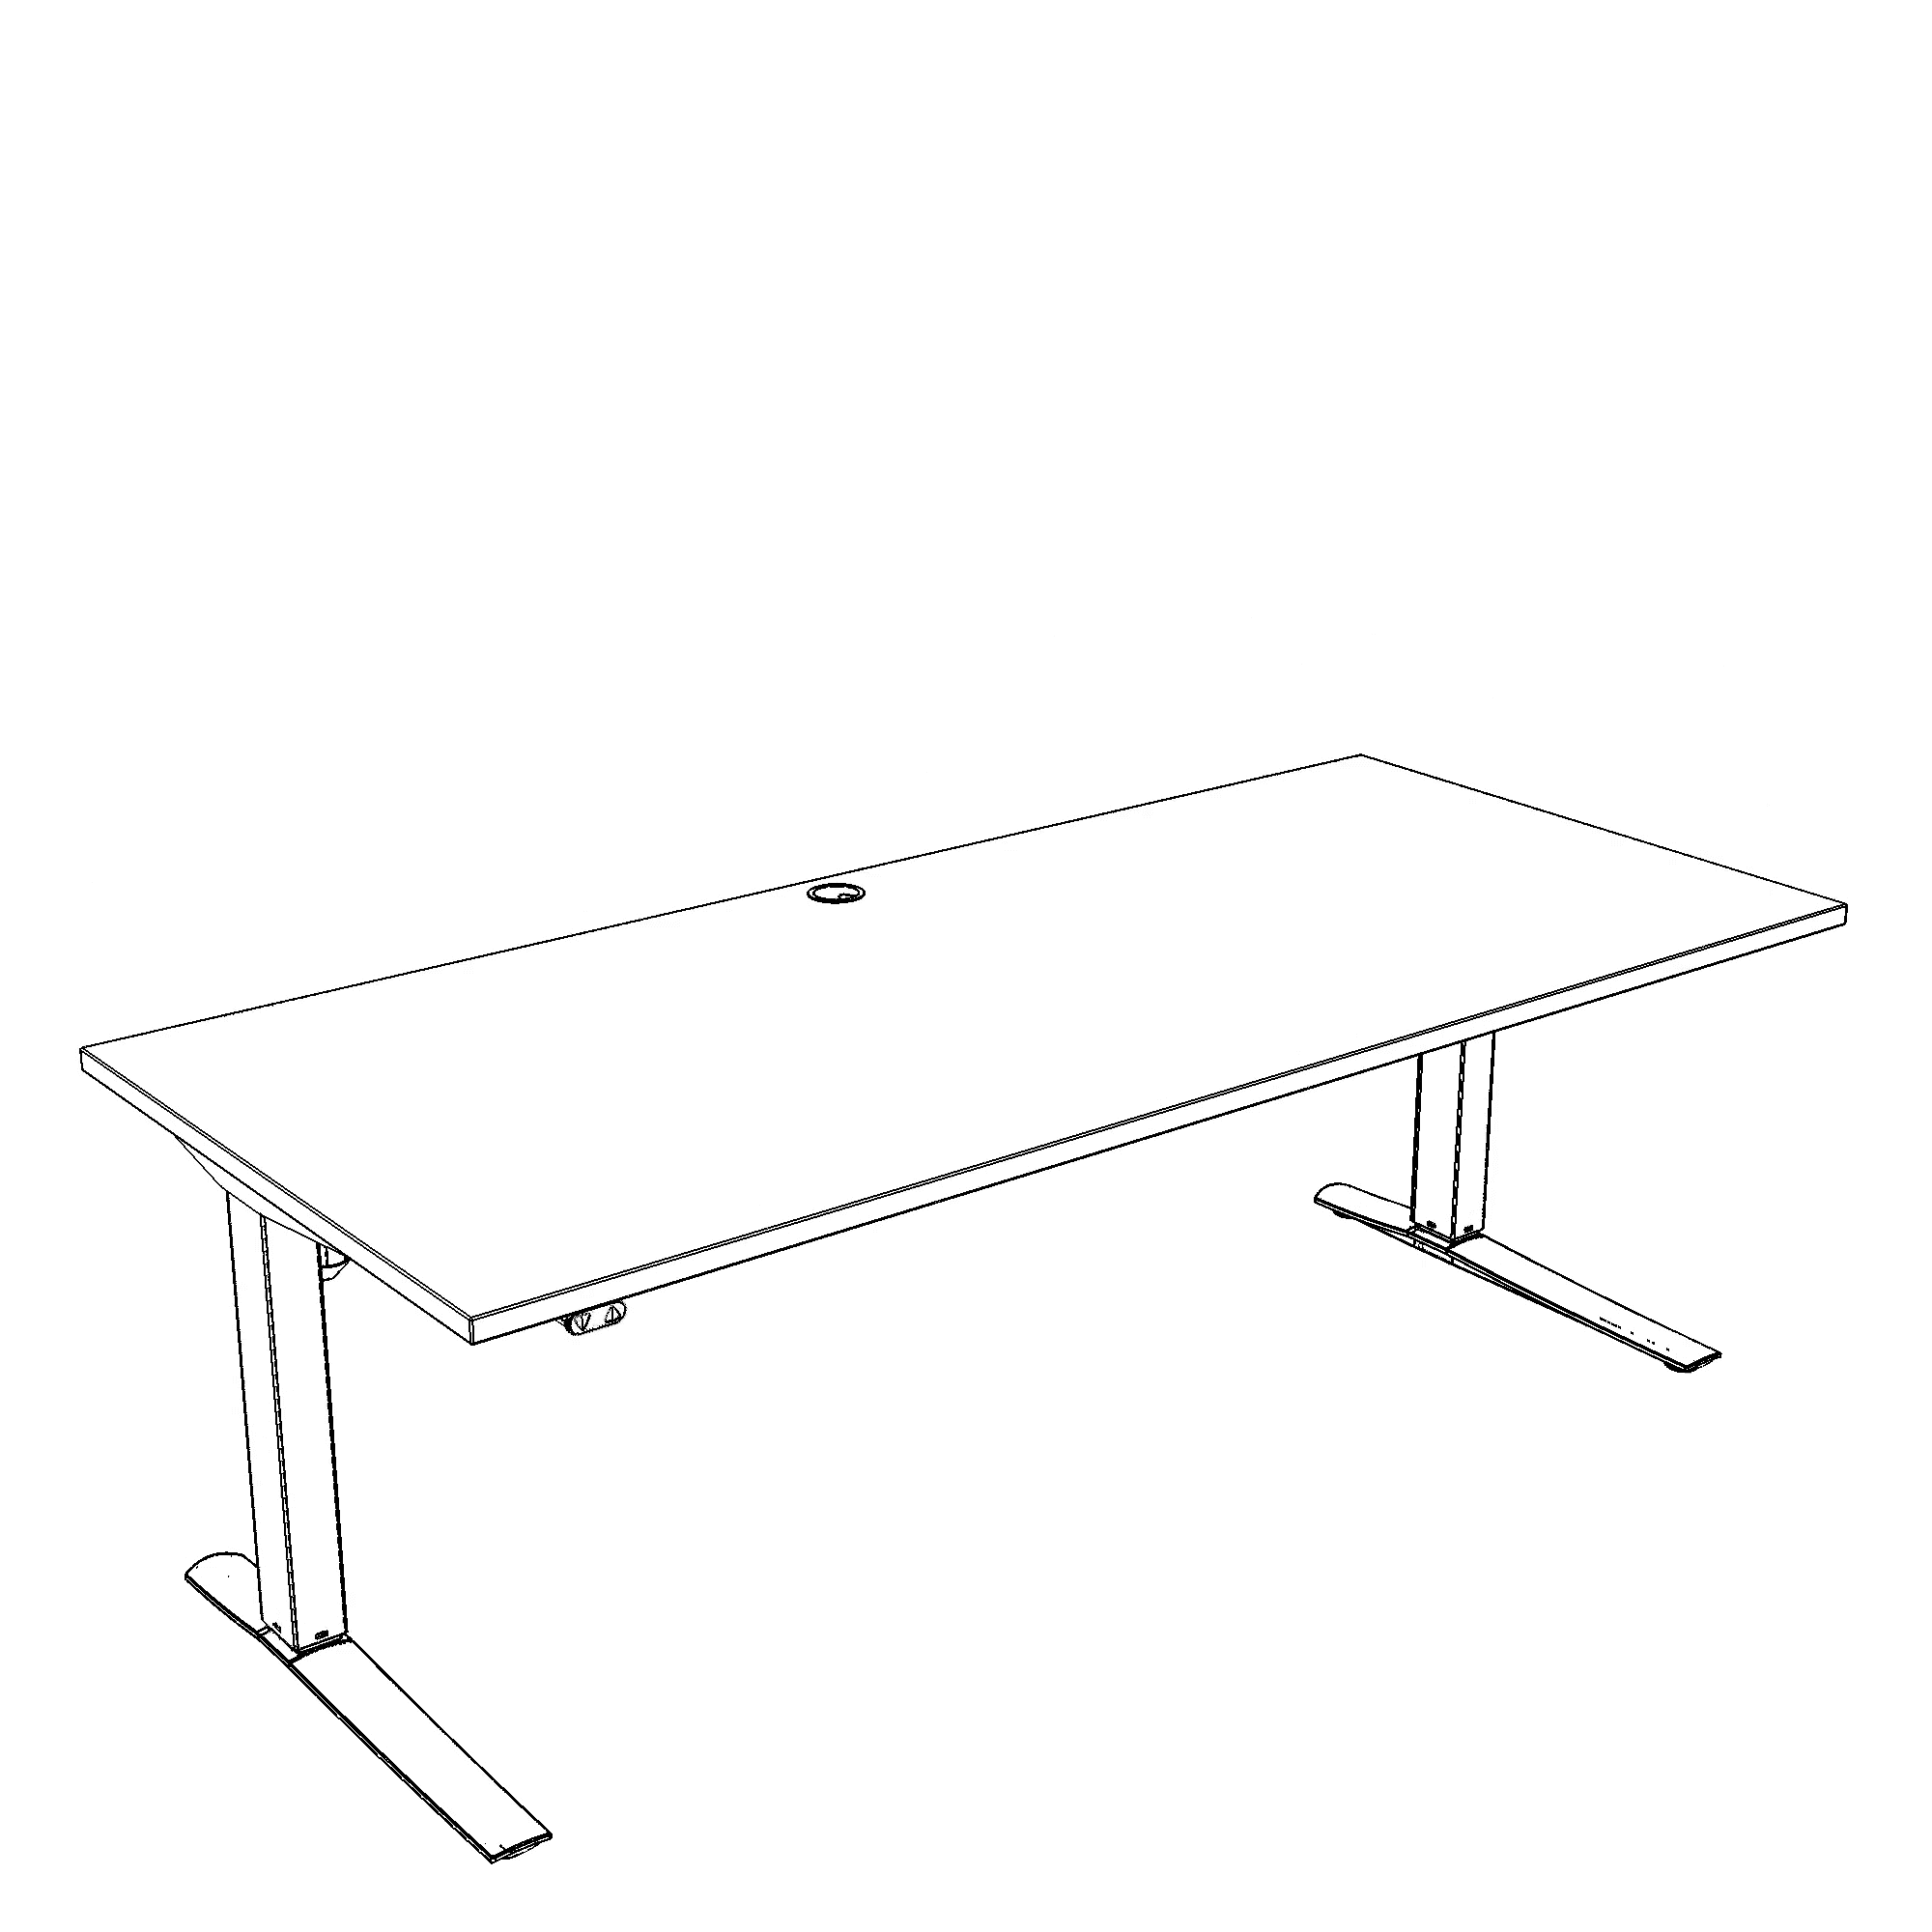 Elektrisch verstelbaar bureau | 160x80 cm | Walnoot met wit frame